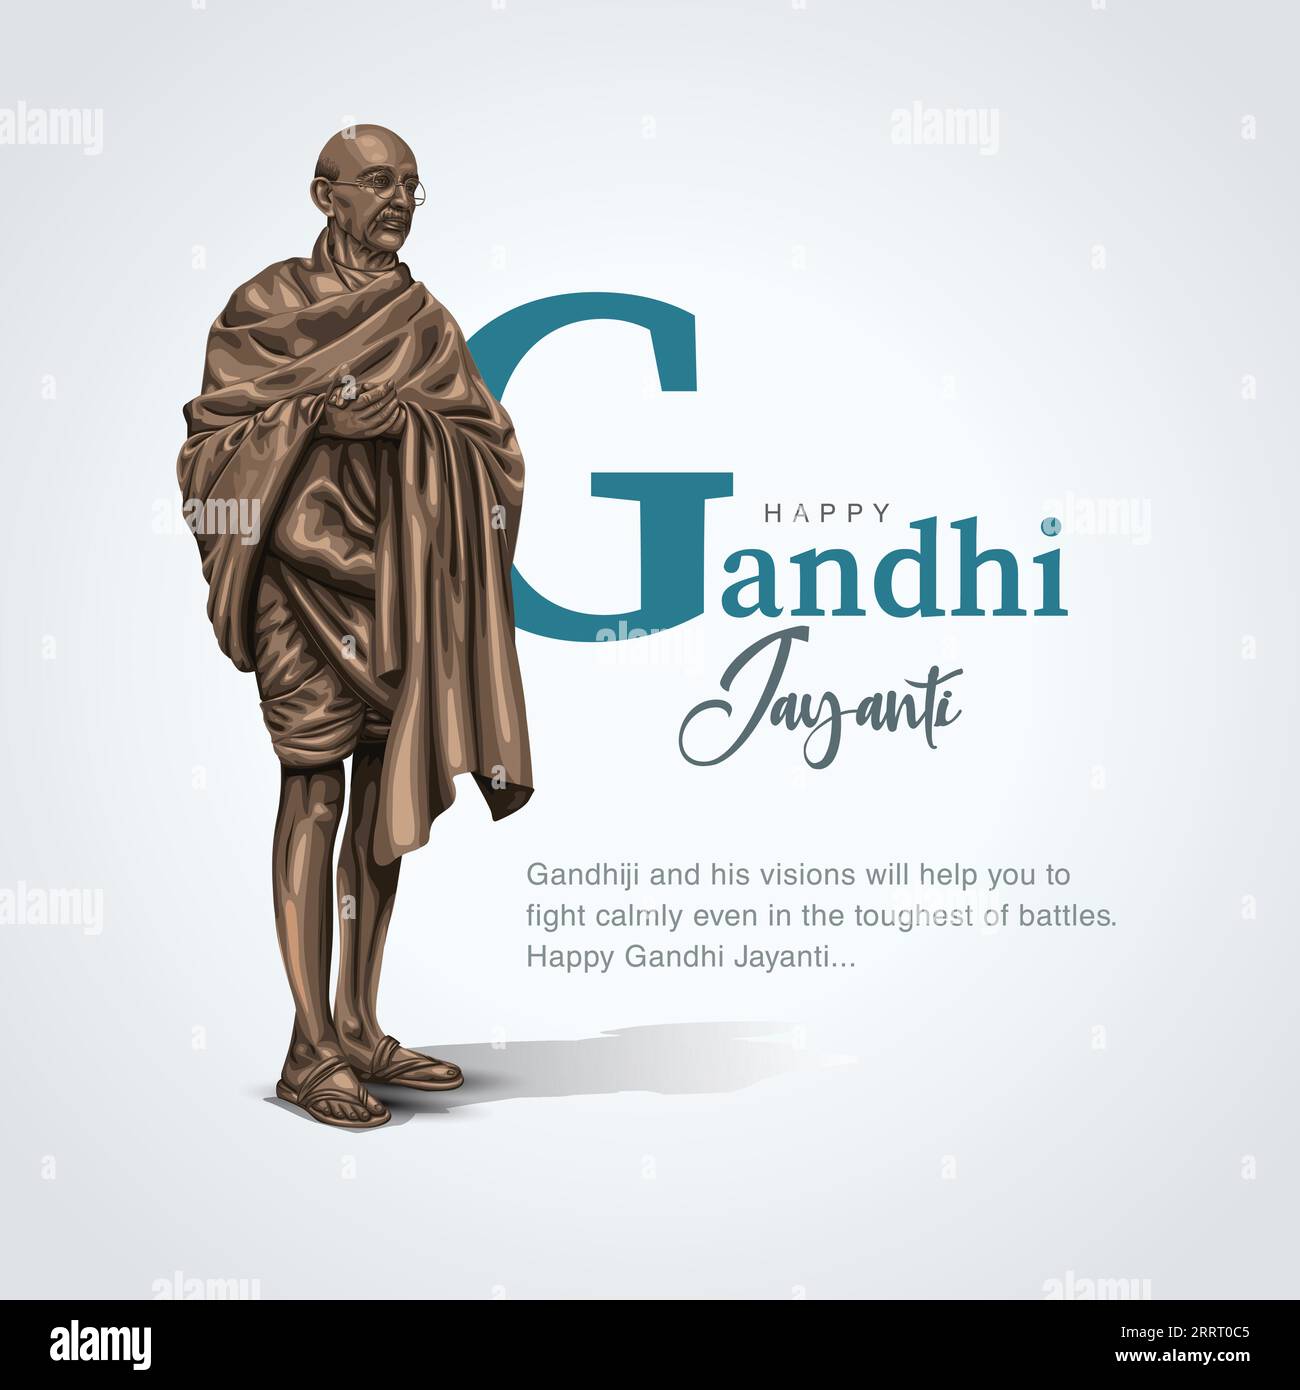 2 octobre Happy gandhi jayanti. Combattant de la liberté indienne Mahatma Gandhi il est connu sous le nom de Bapu. conception abstraite d'illustration vectorielle Illustration de Vecteur